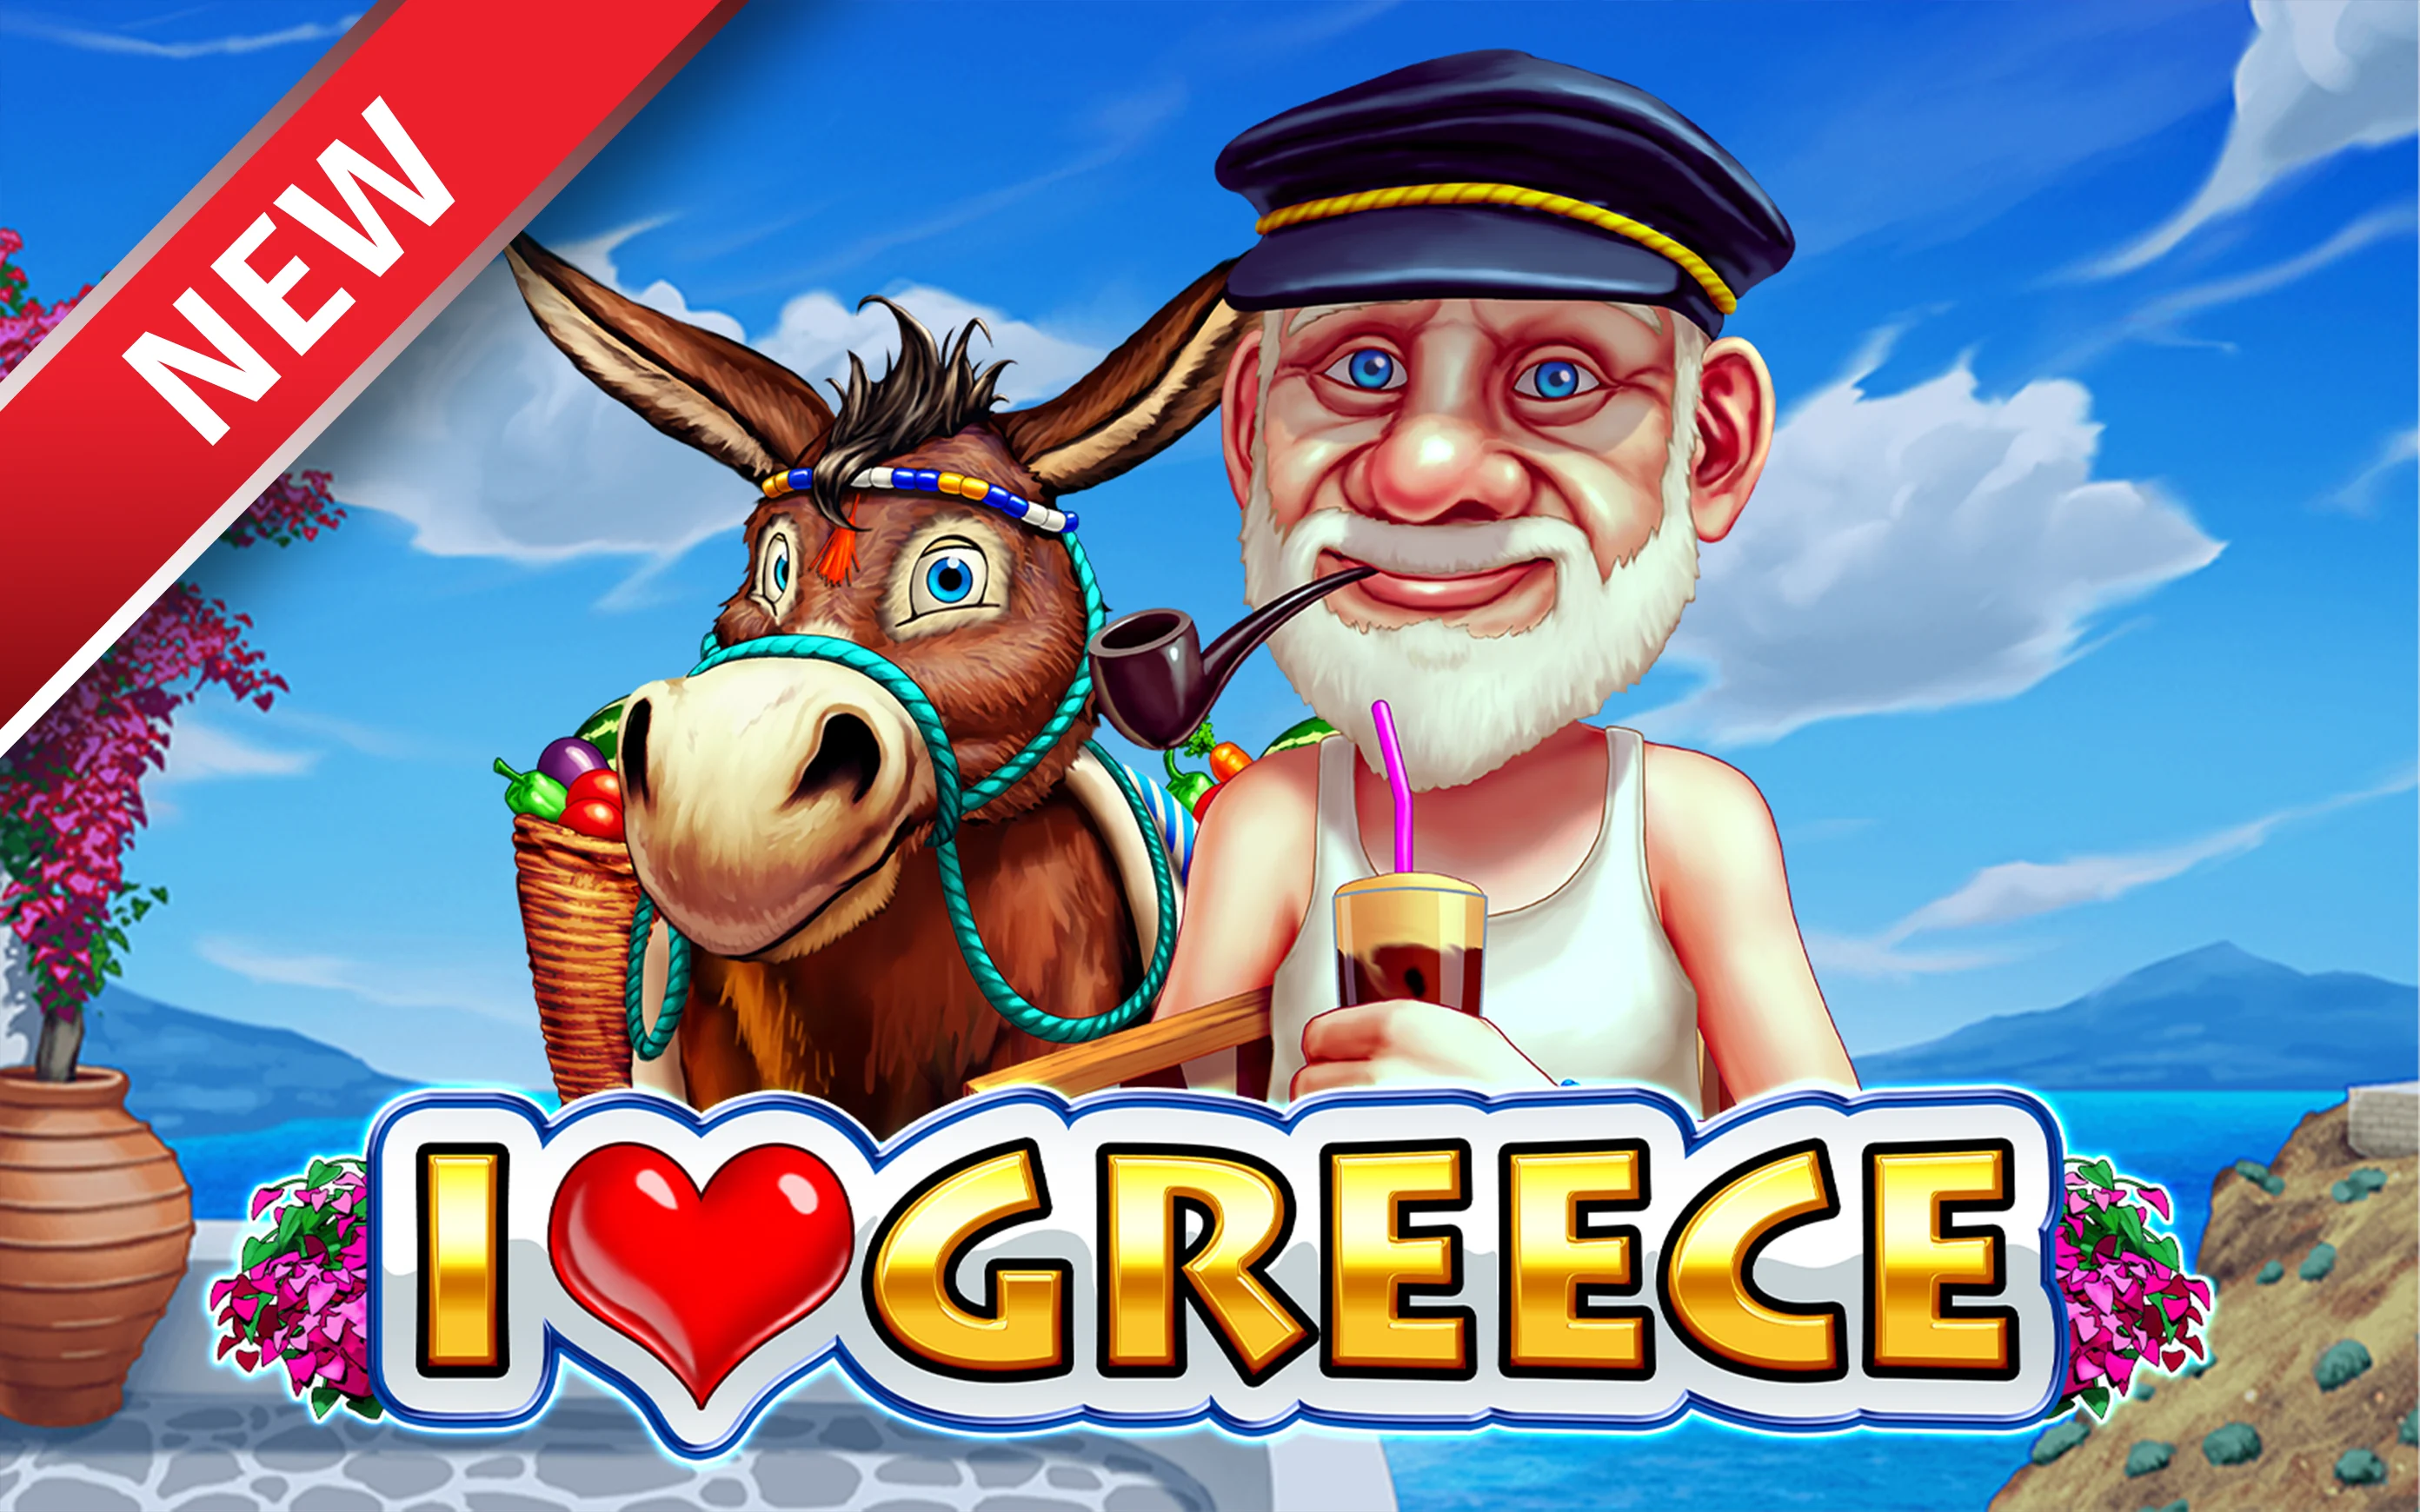 Juega a I Love Greece en el casino en línea de Starcasino.be